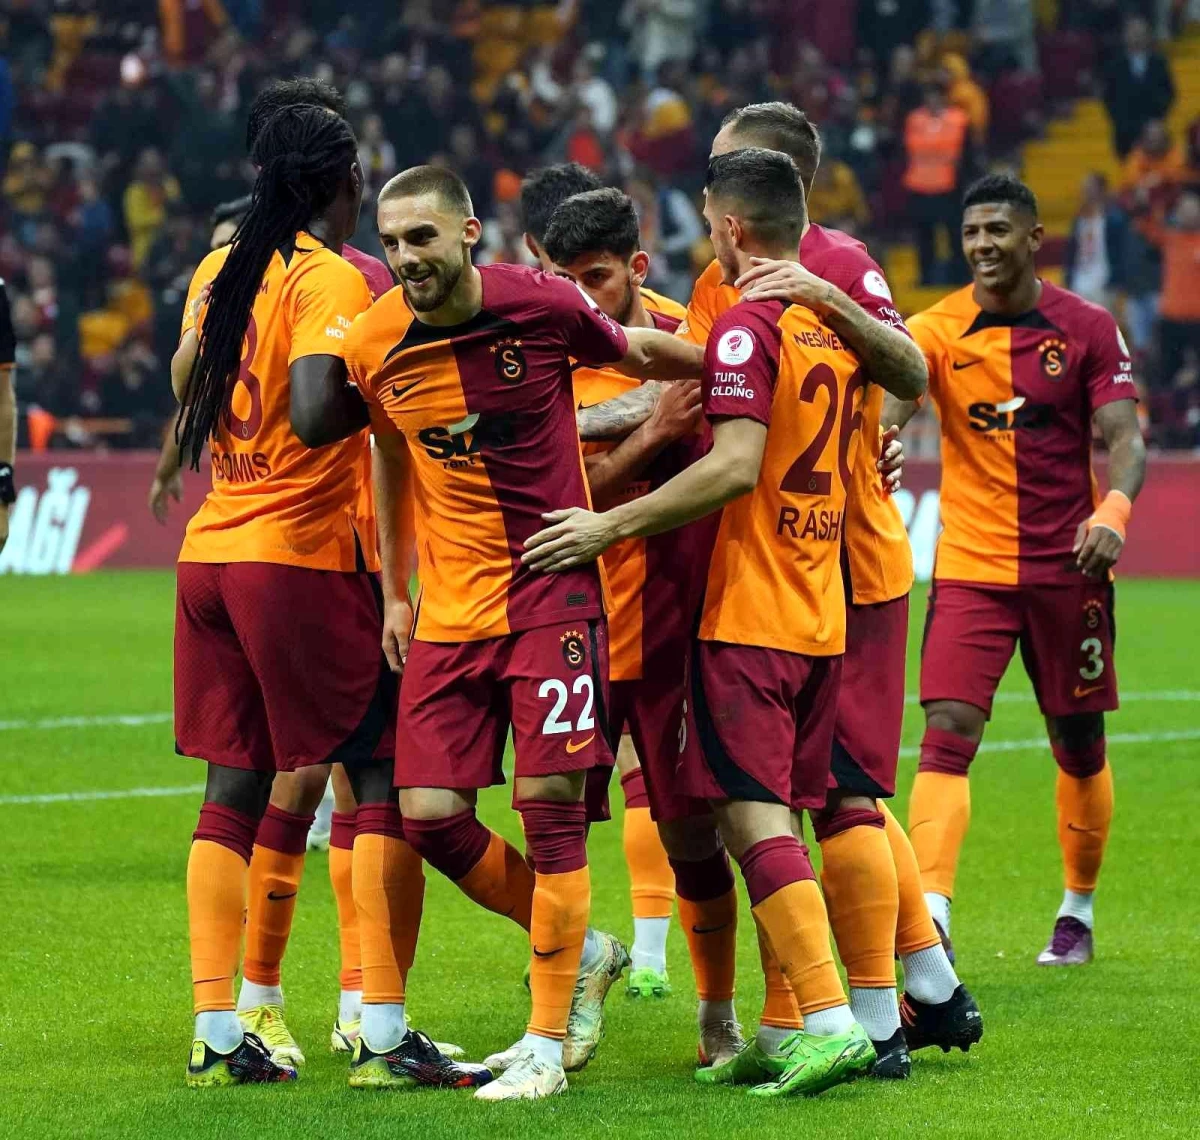 Galatasaray kupada farklı turladı